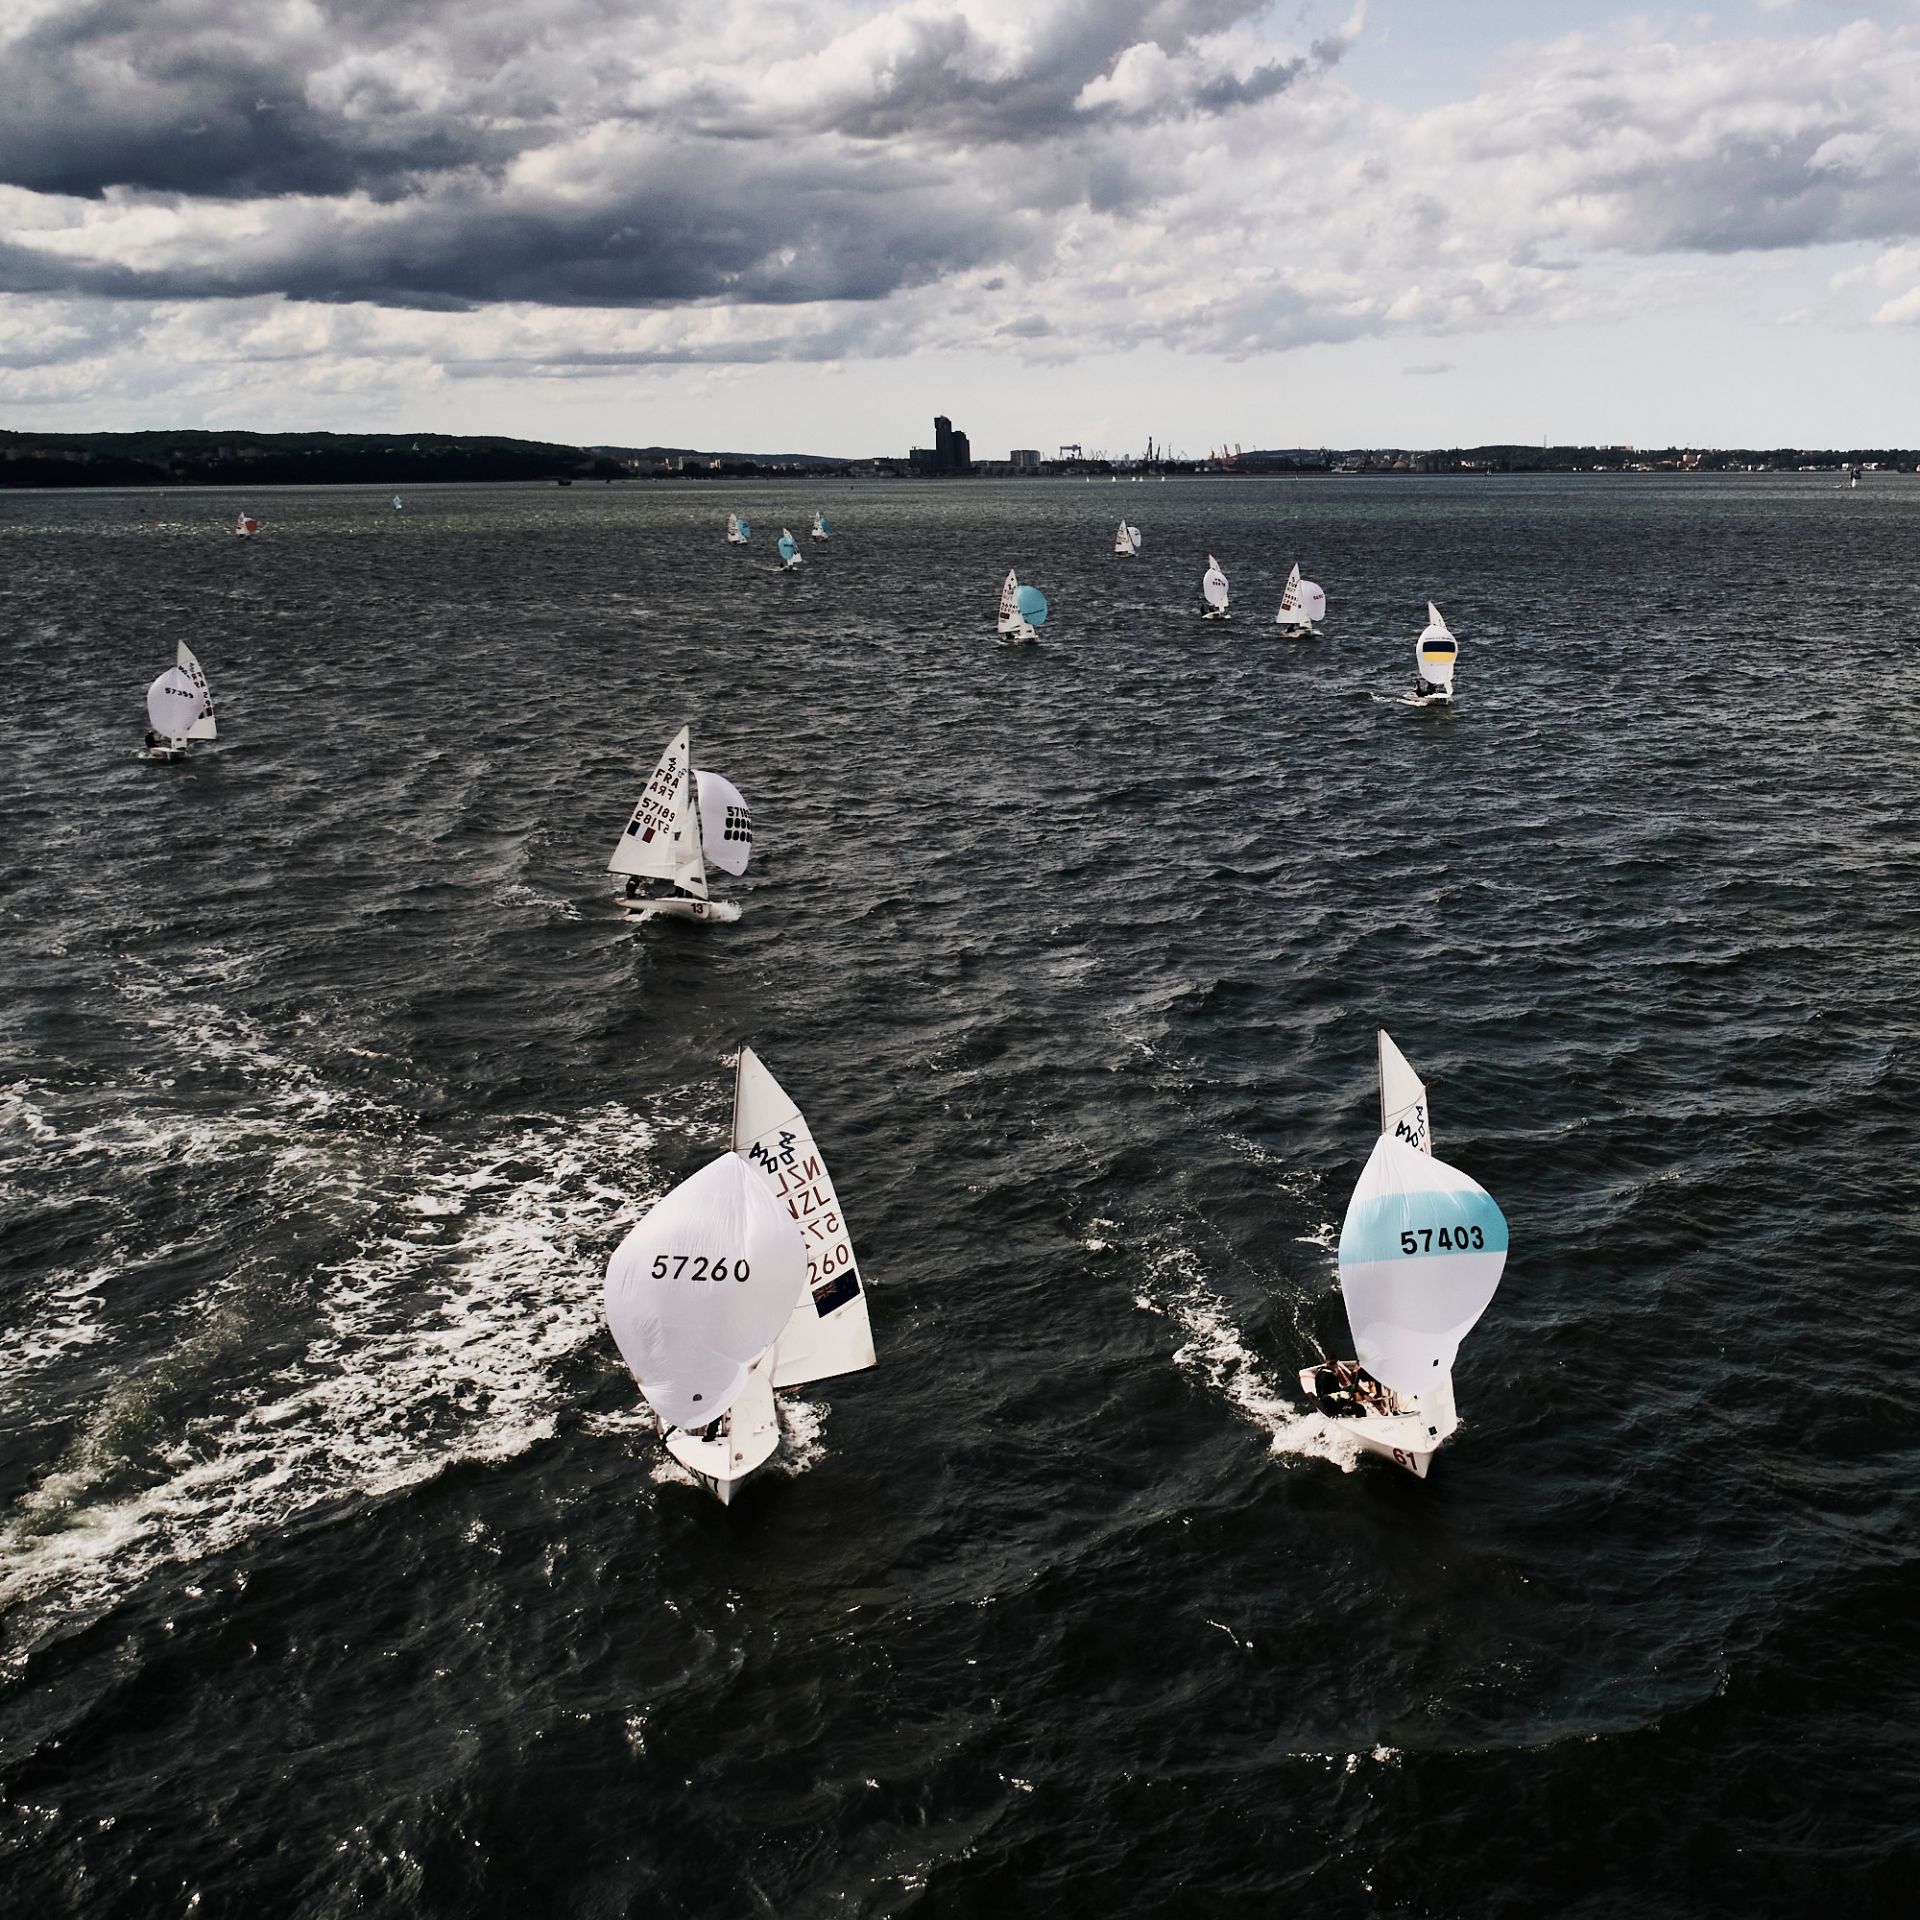 żaglówki rywalizujące podczas Gdynia Sailing Days 